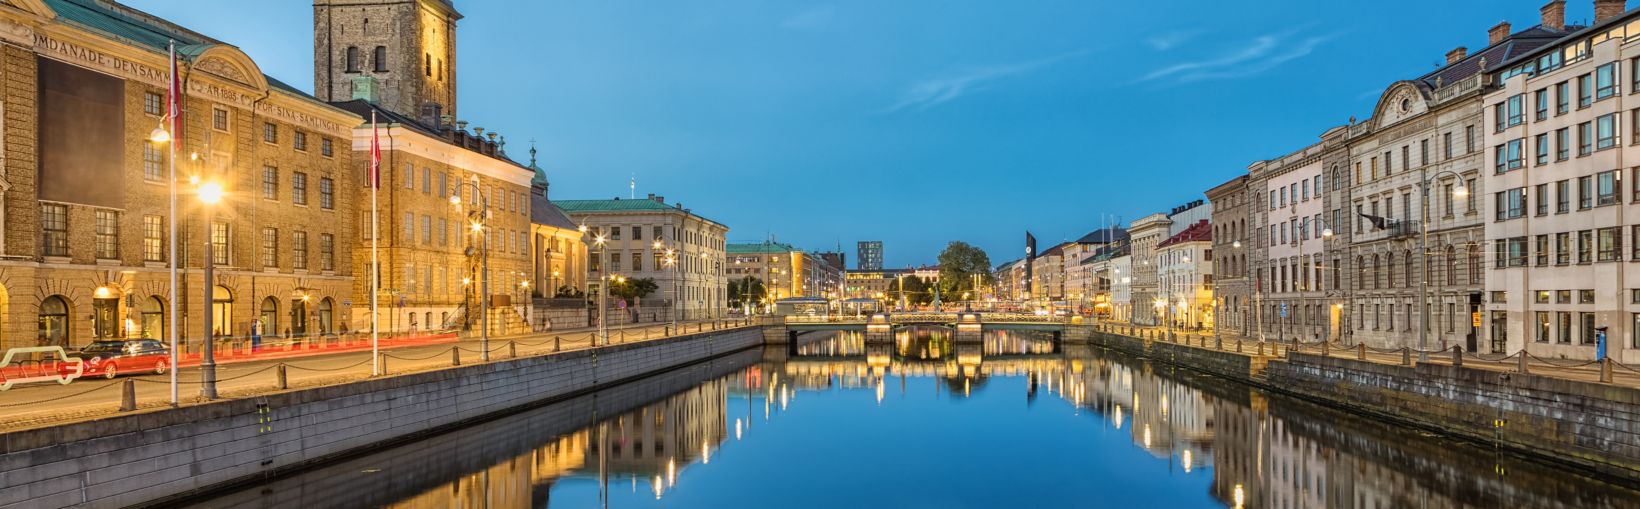 Miestas ir jo didysis uosto kanalas bei vokiška bažnyčia („Christinae“), sutemus Geteborge, Švedijoje